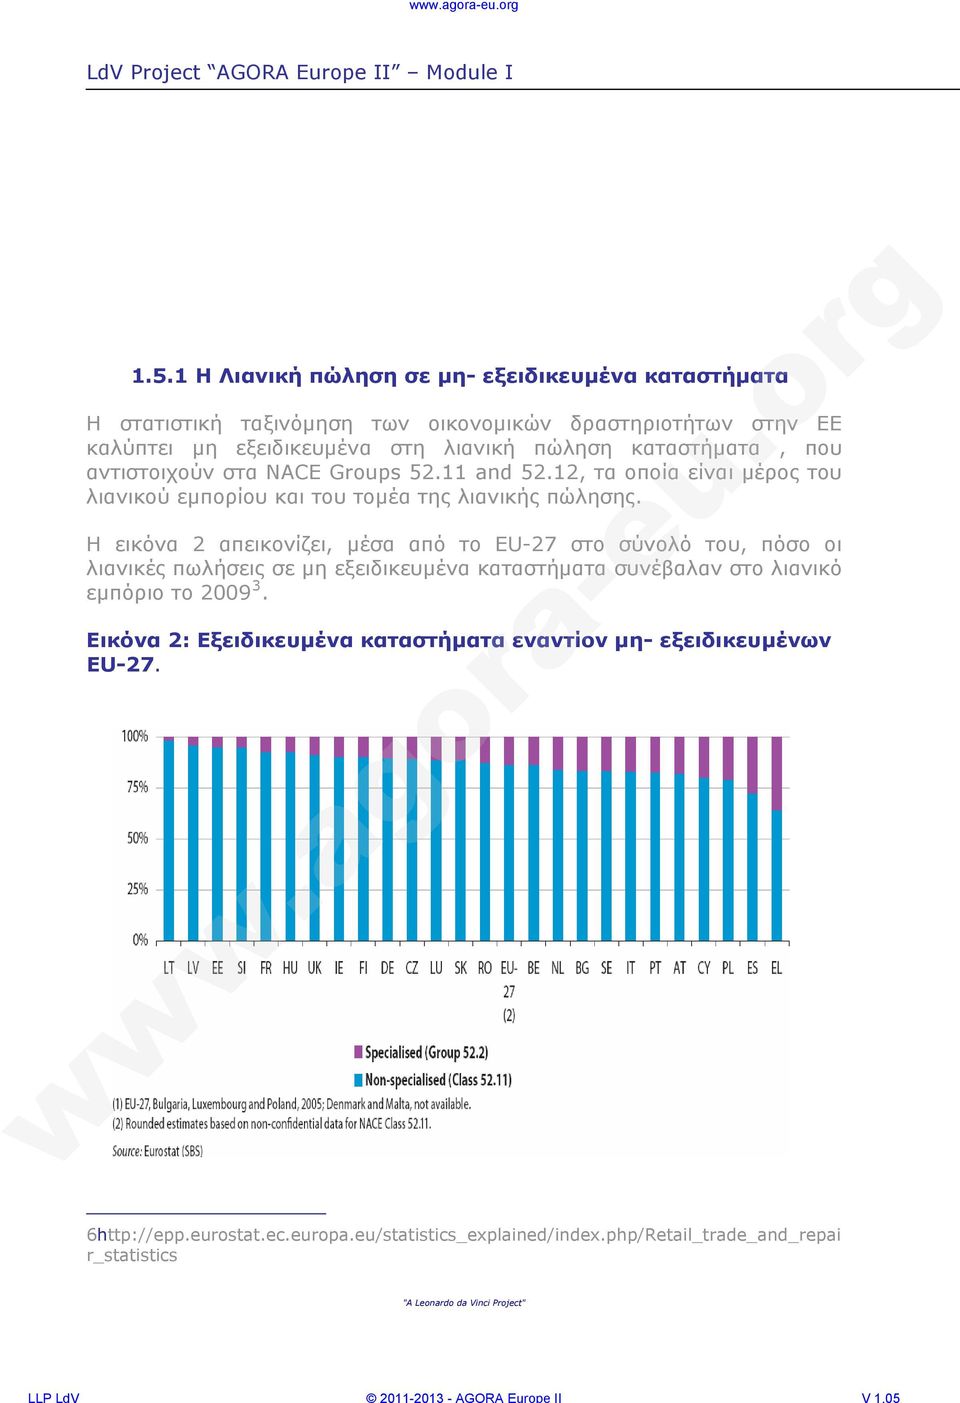 Η εικόνα 2 απεικονίζει, μέσα από το EU-27 στο σύνολό του, πόσο οι λιανικές πωλήσεις σε μη εξειδικευμένα καταστήματα συνέβαλαν στο λιανικό εμπόριο το 2009 3.